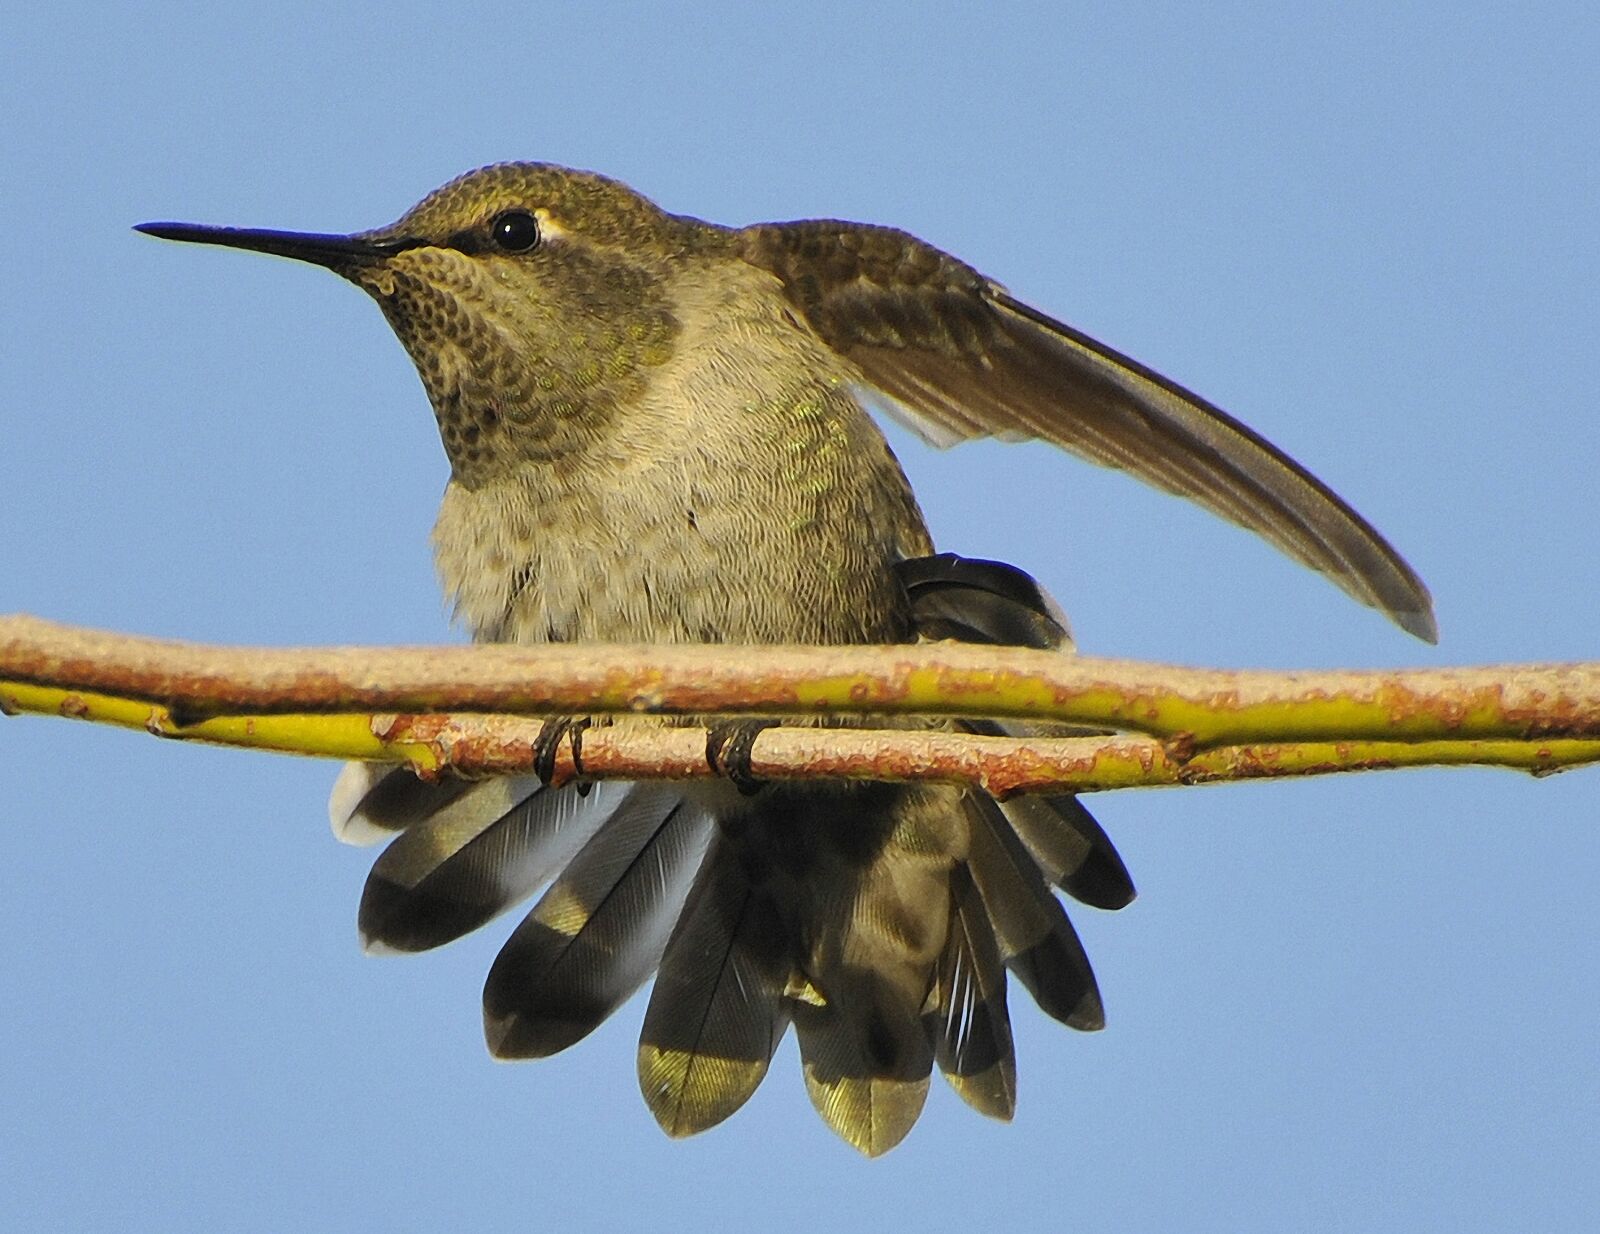 Nikon D300 sample photo. Hummingbird, bird, avian photography